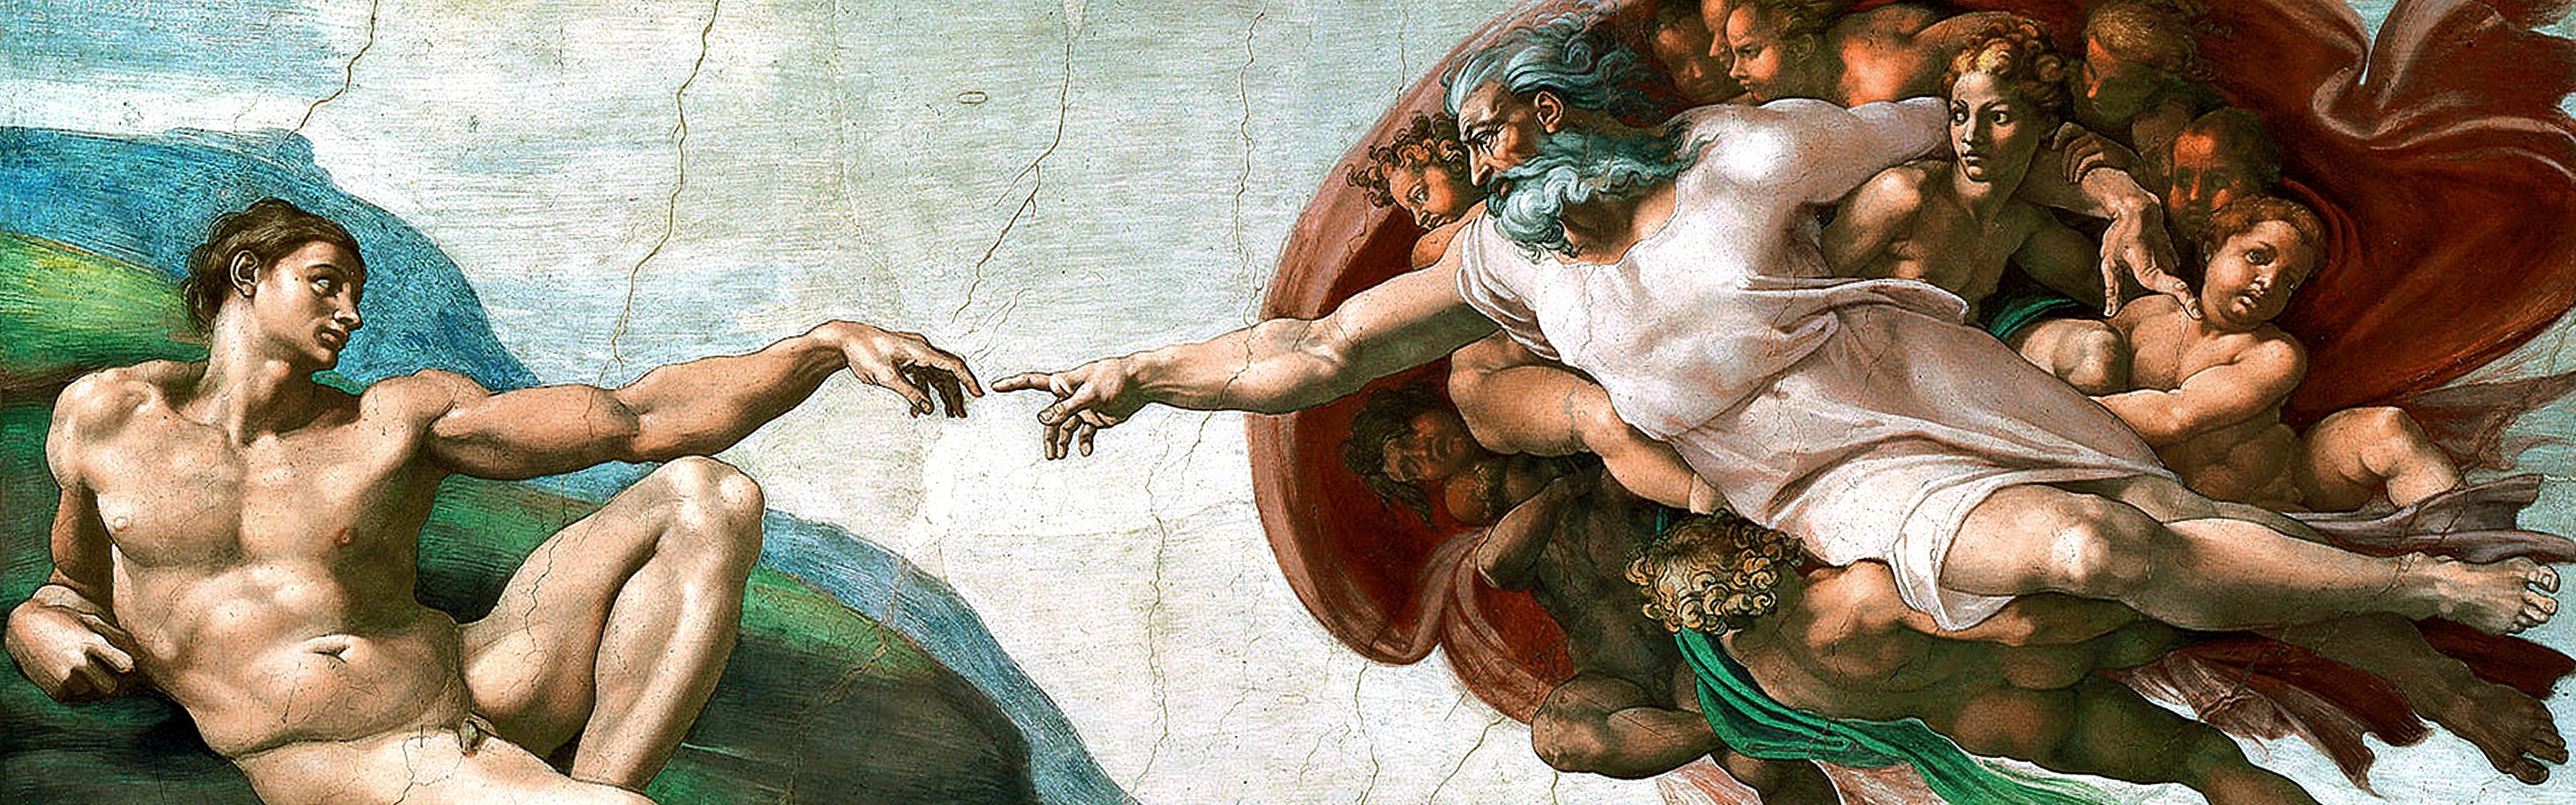 Michelangelo, Wallpapers, Backgrounds, Art, 3840x1200 Dual Screen Desktop